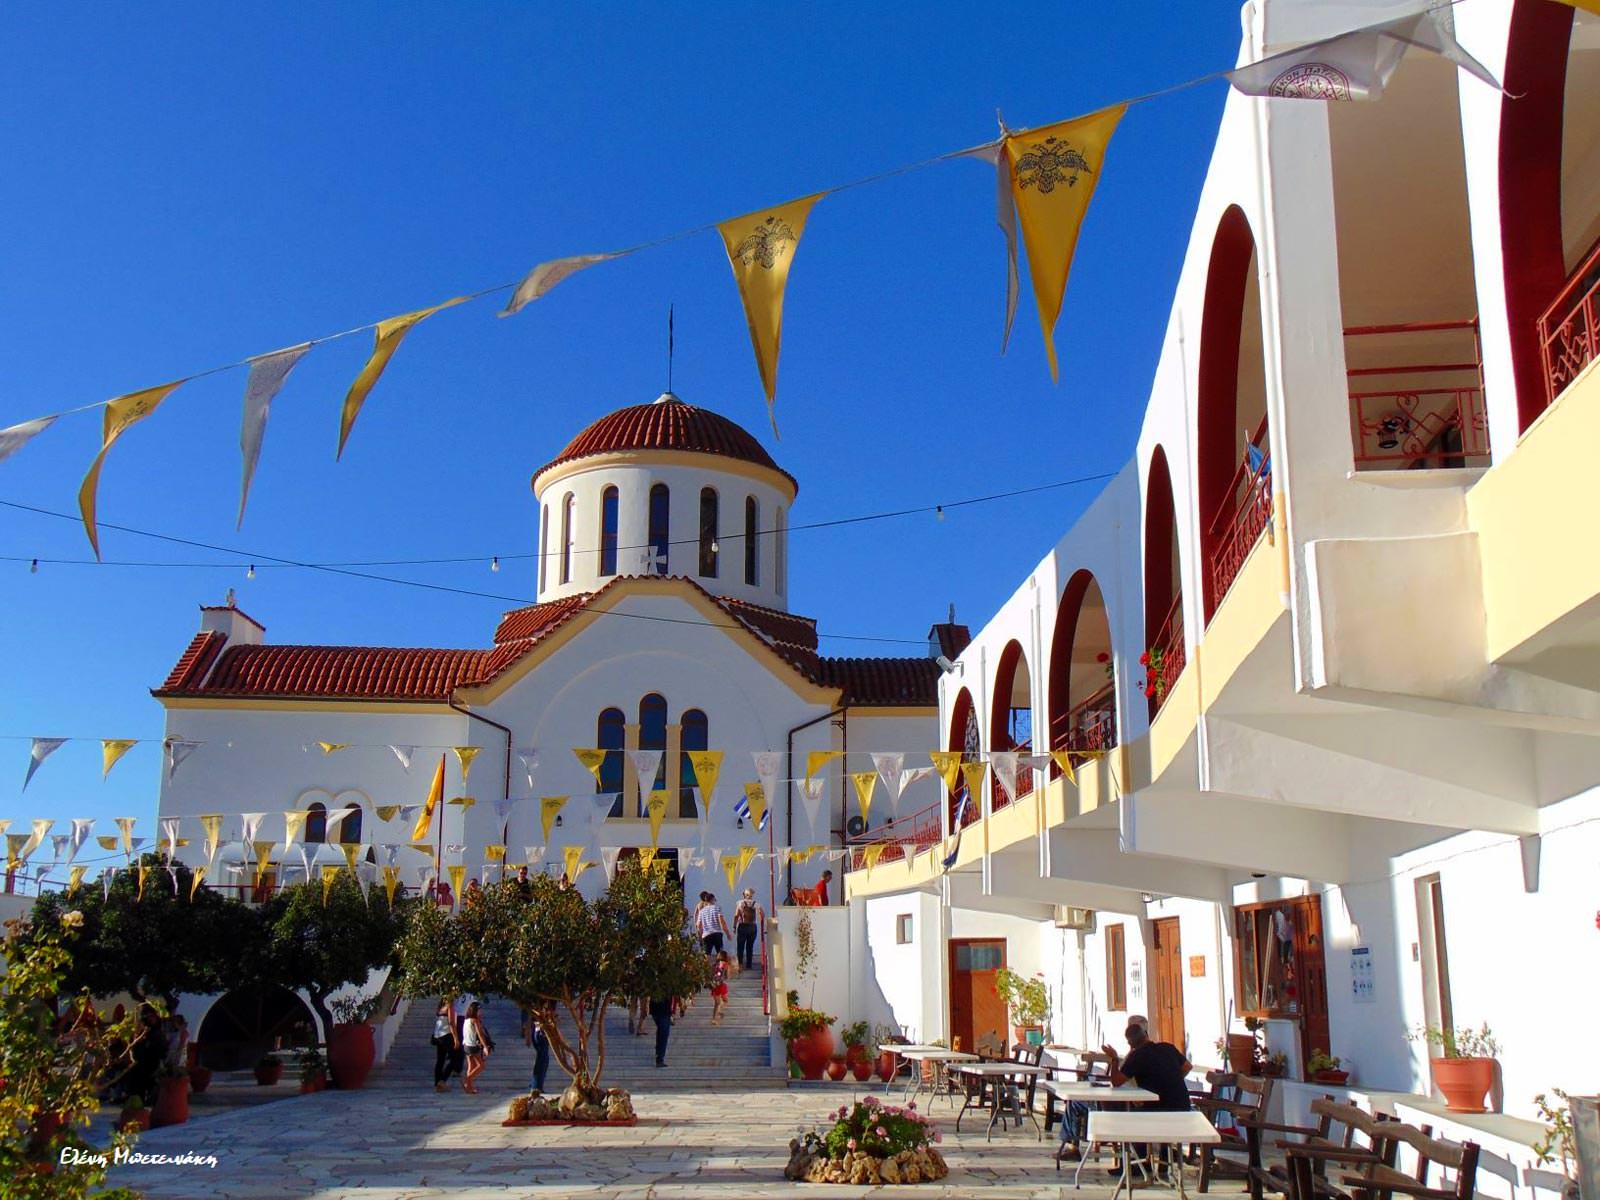 Αγία Μαρίνα Βόνης: «Ήταν κάποτε το μεγαλύτερο πανηγύρι της Κρήτης» -  ΕΚΚΛΗΣΙΑ ONLINE